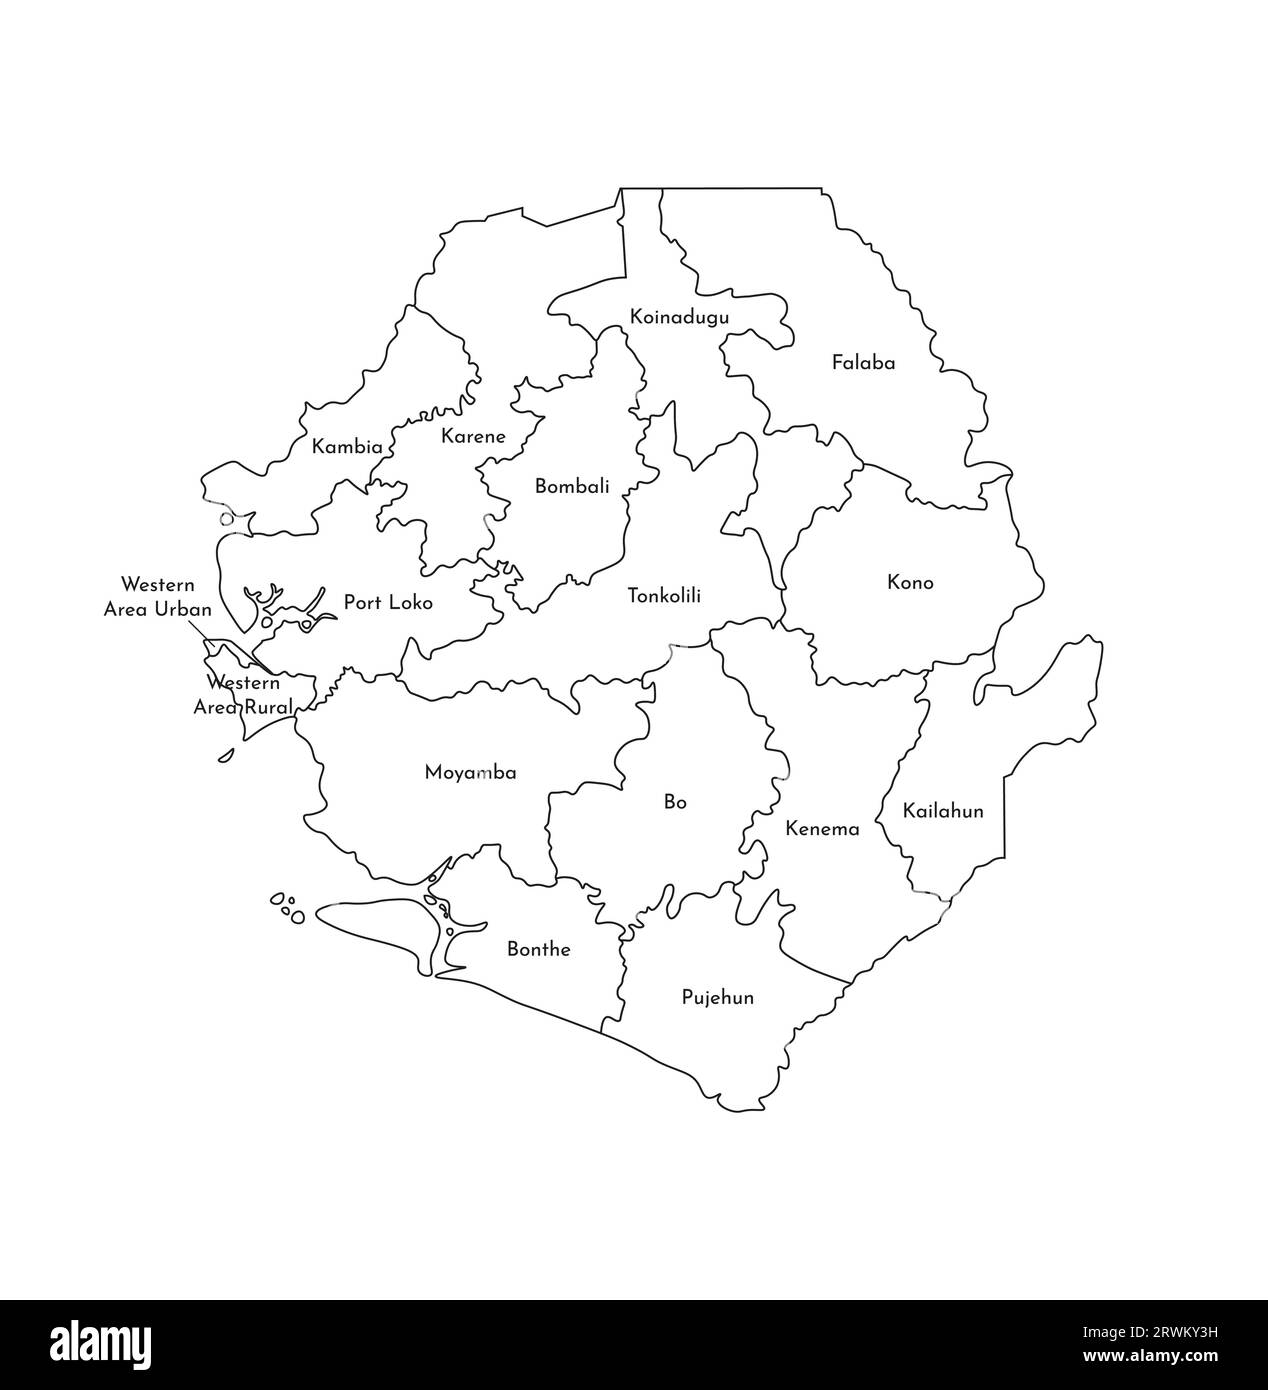 Vektorisolierte Darstellung der vereinfachten Verwaltungskarte Sierra Leones. Grenzen und Namen der Bezirke (Regionen). Silhouetten mit schwarzen Linien. Stock Vektor